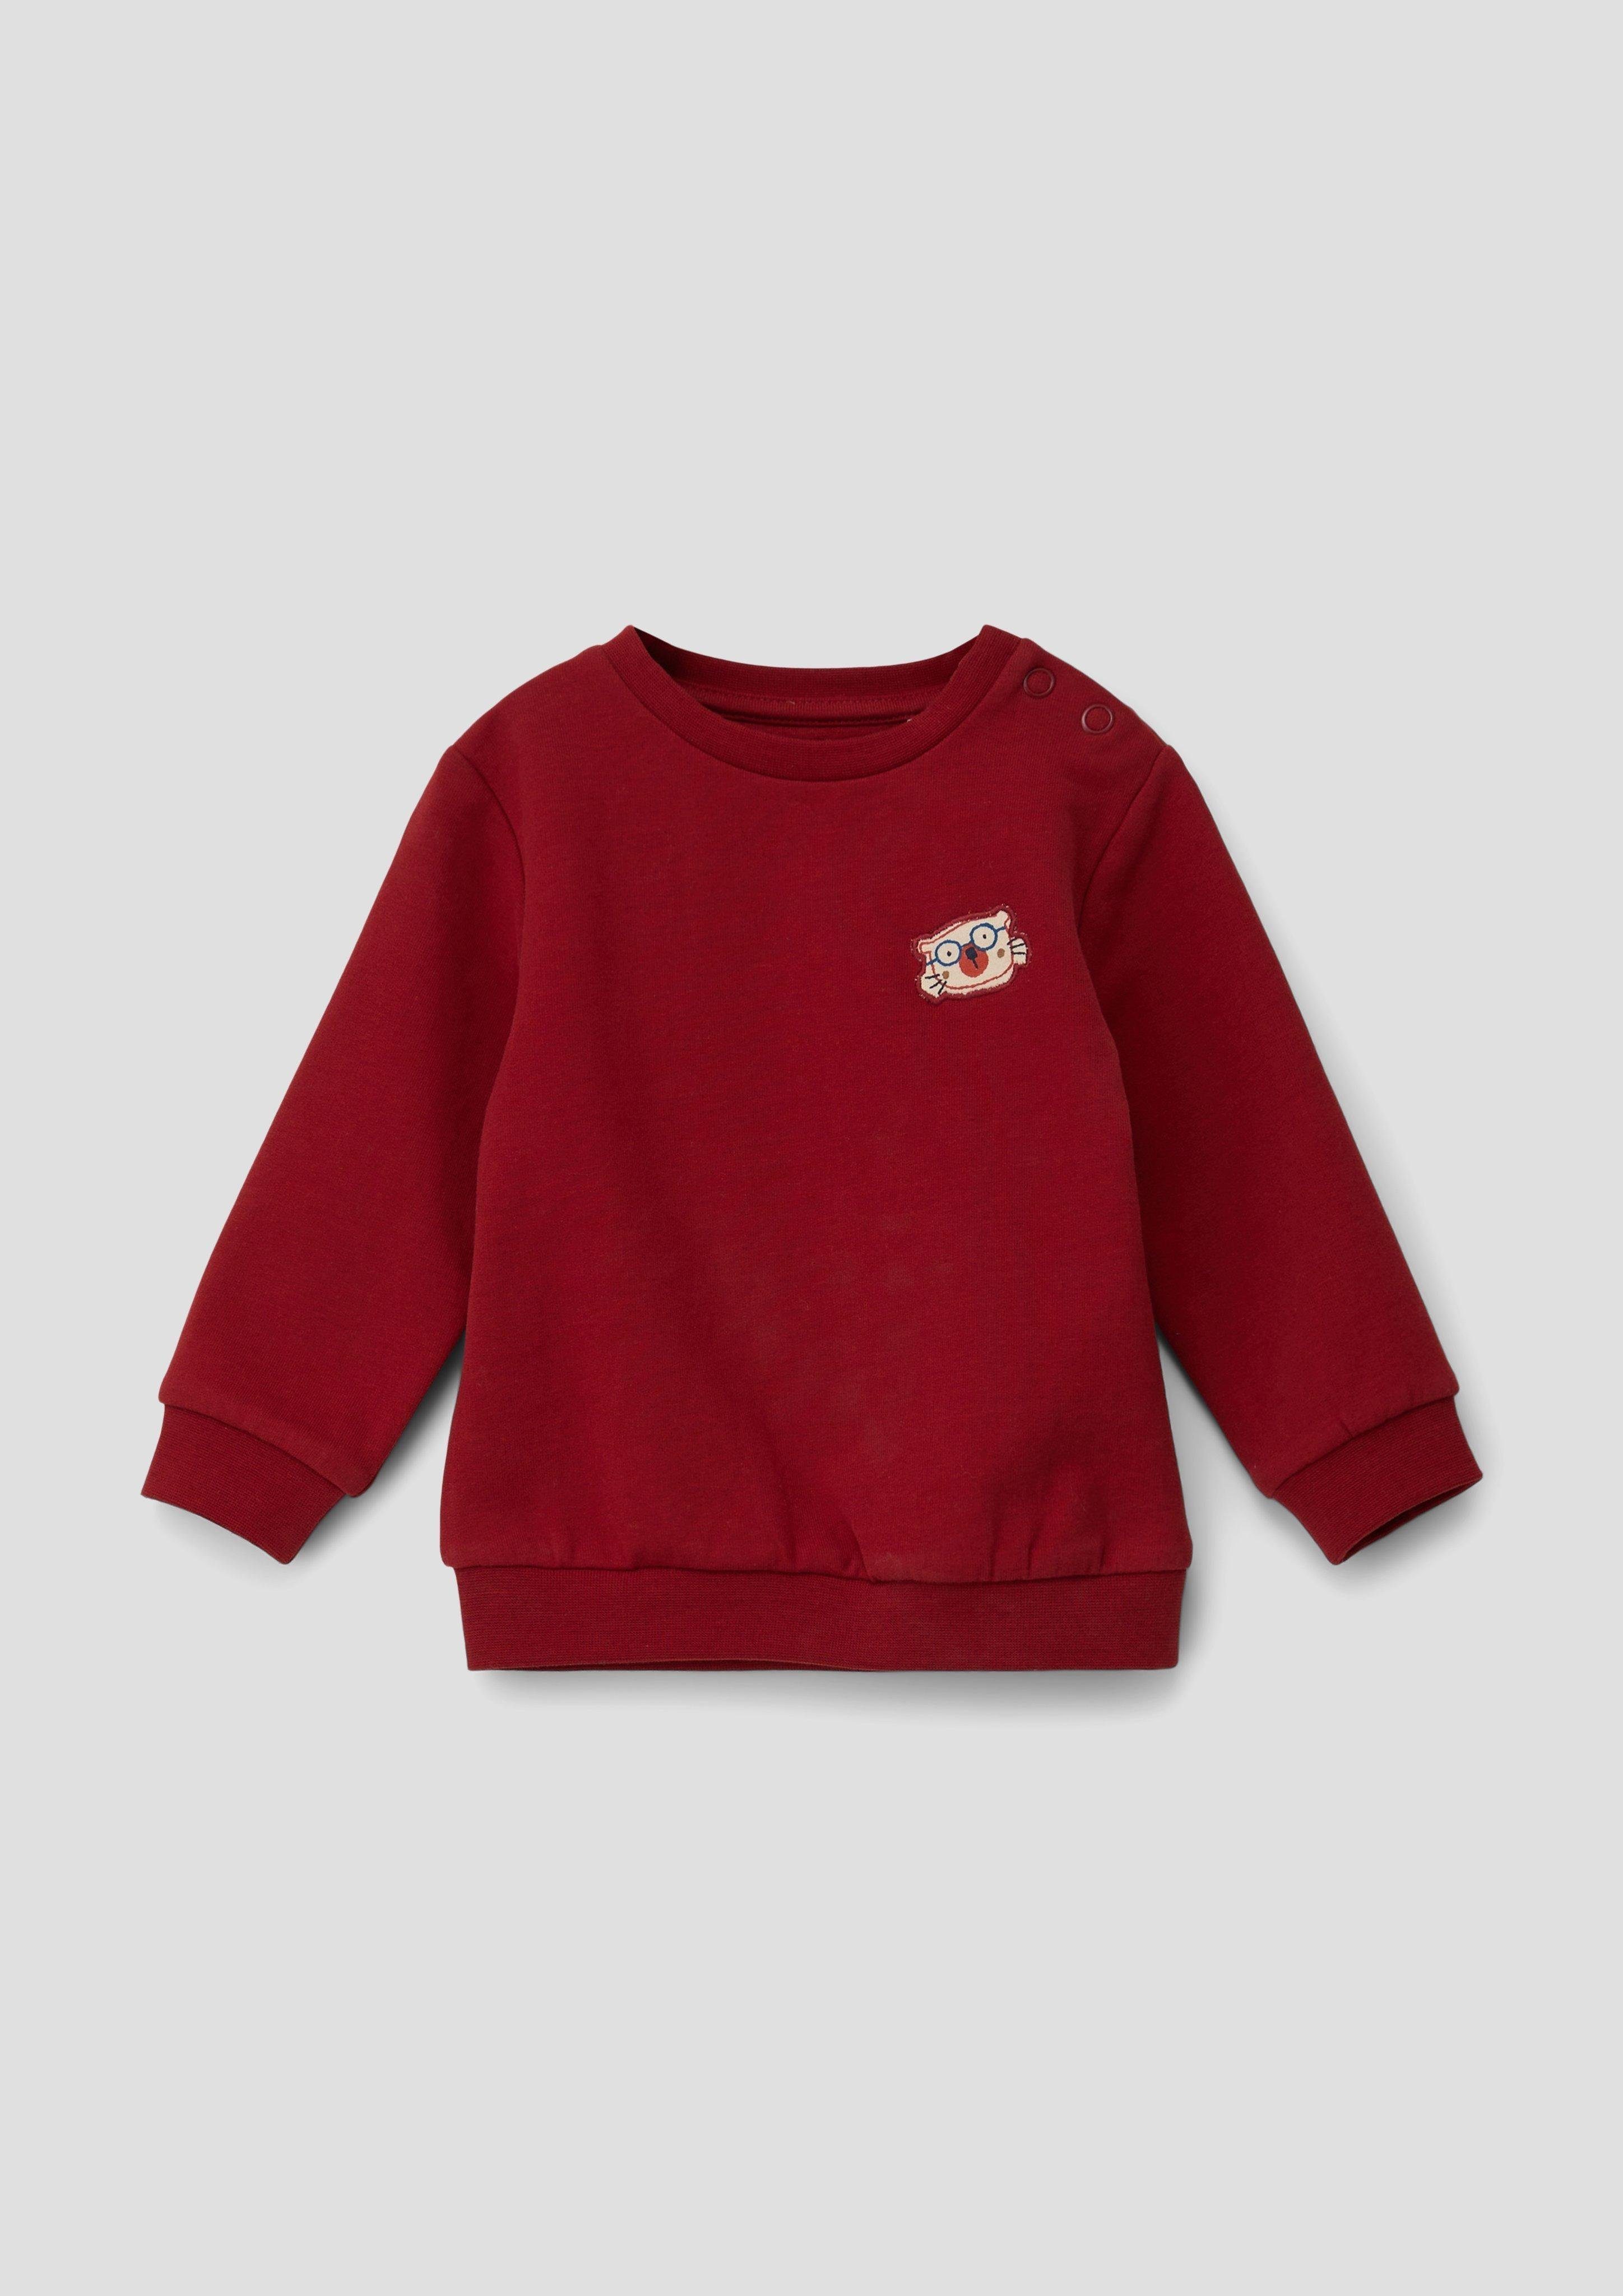 s.Oliver Junior s.Oliver Sweatshirt Sweatshirt aus Baumwollstretch Applikation